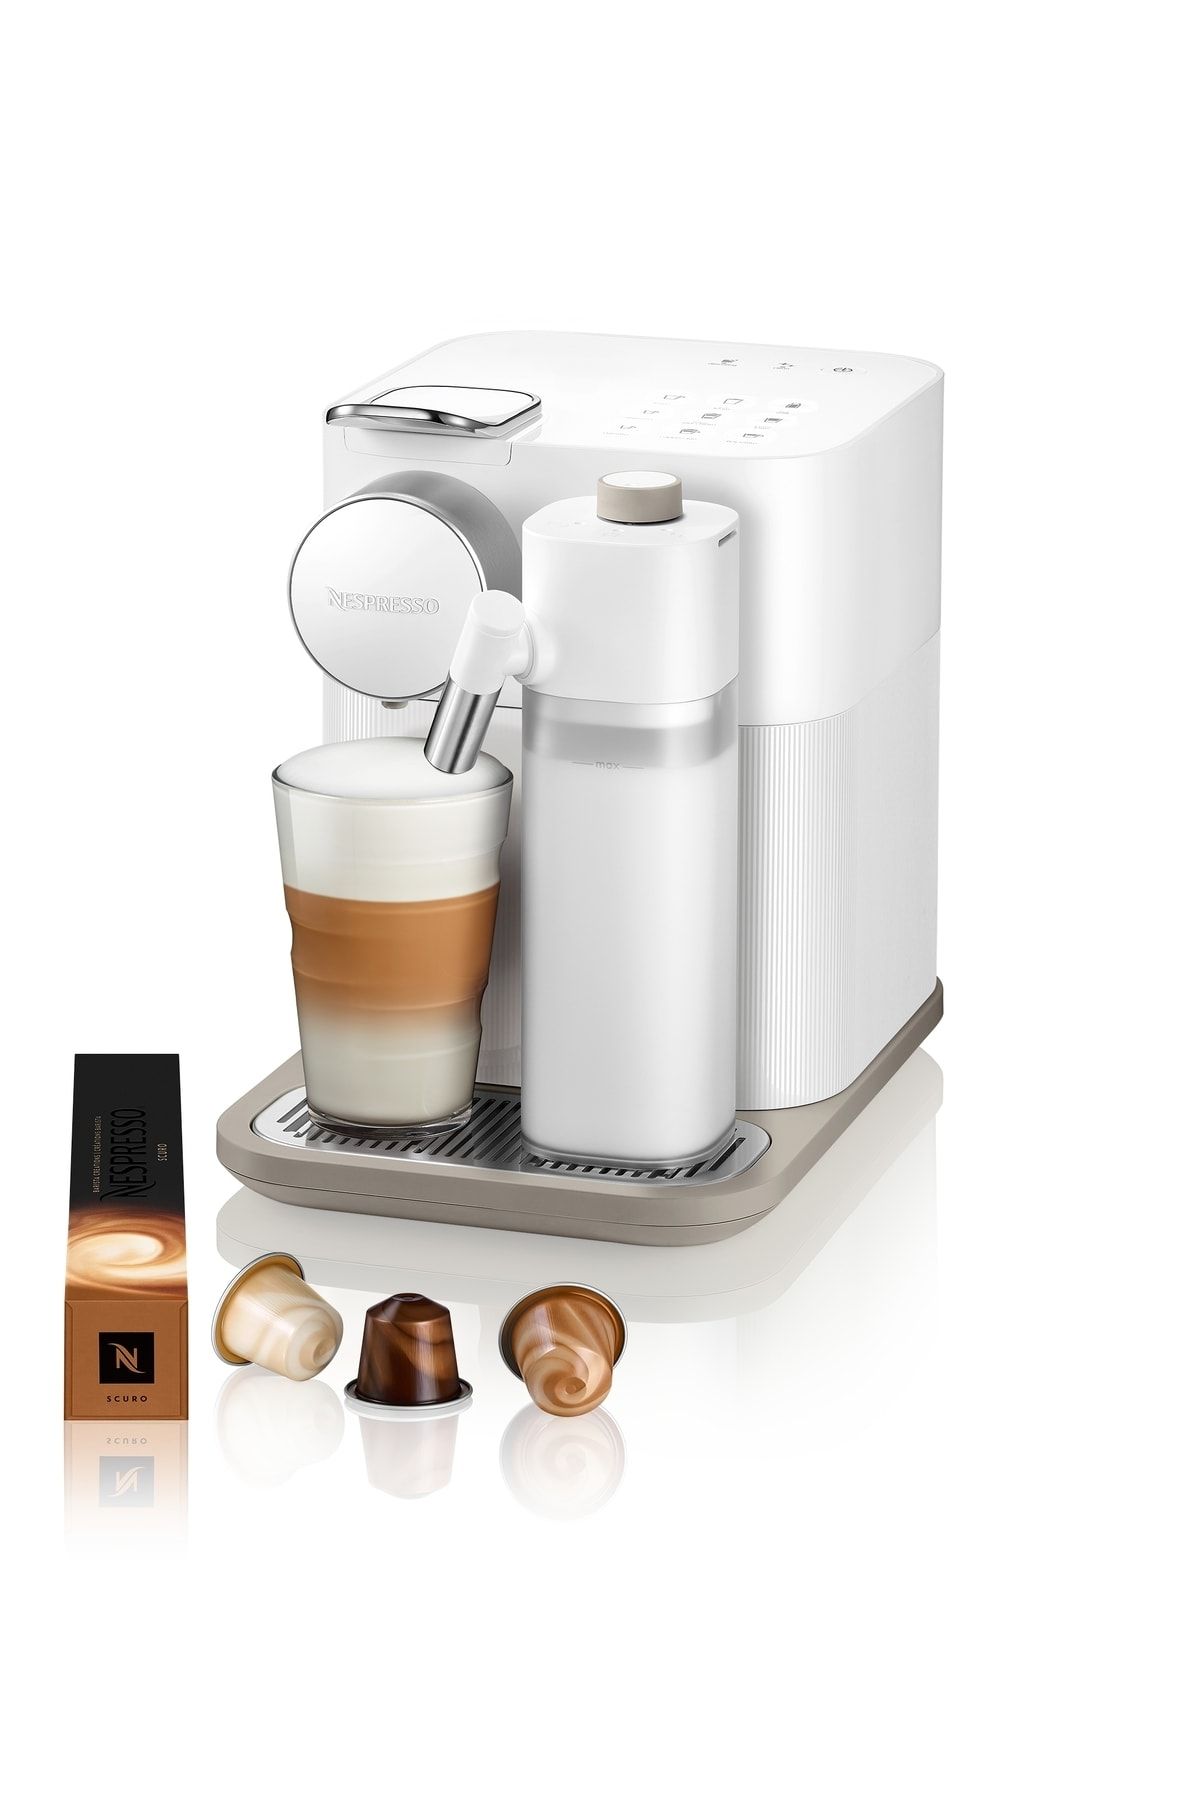 Nespresso Beyaz F531 White Lattissima Kapsüllü Makinesi Fiyatı - Trendyol